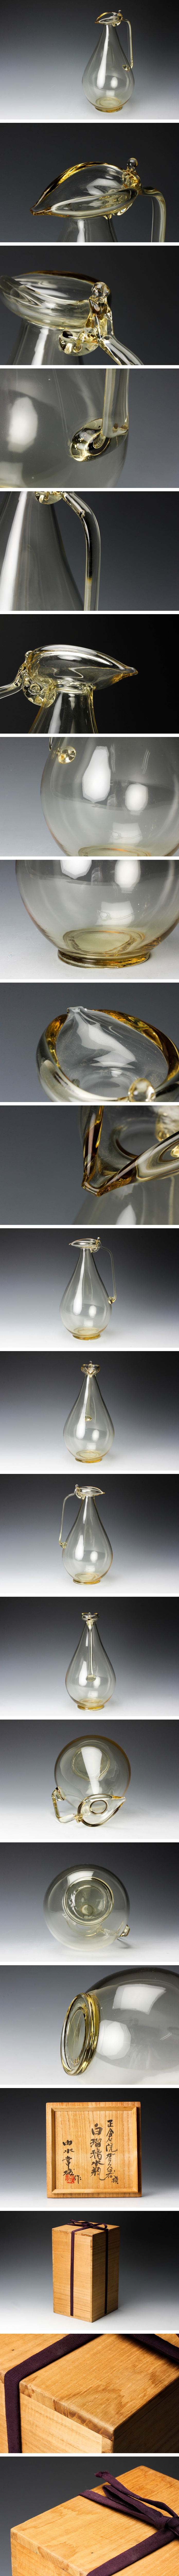 工場直販由水常雄 正倉院ガラス器模白瑠璃水瓶 高さ28㎝ 共箱 本物保証 工芸ガラス